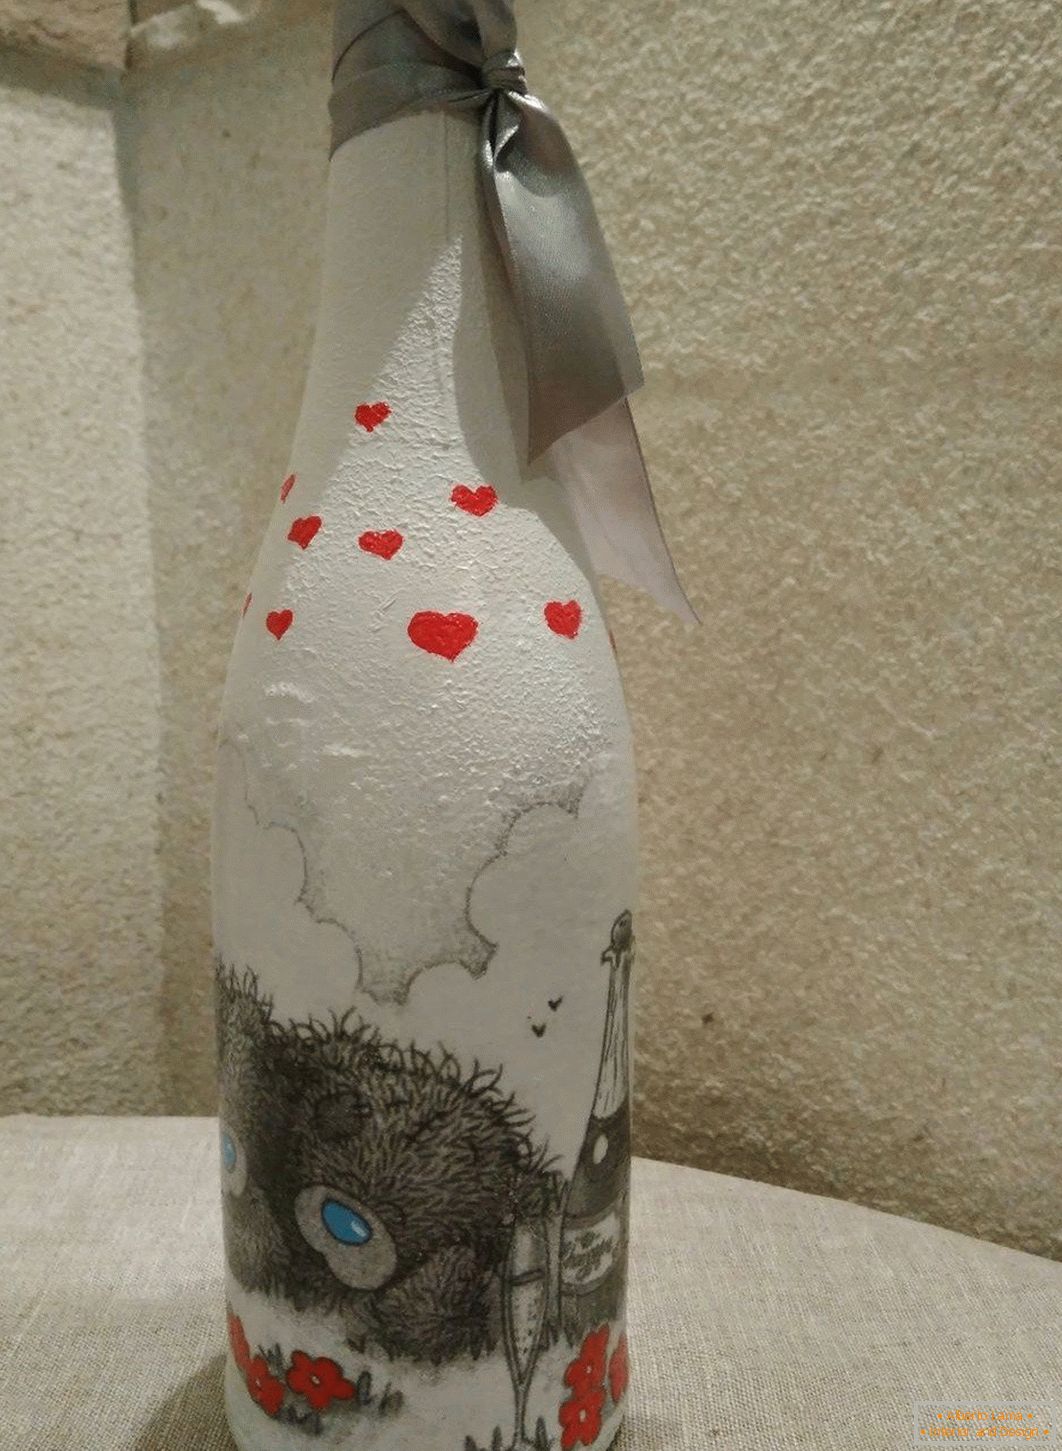 Zeichnung auf der Flasche